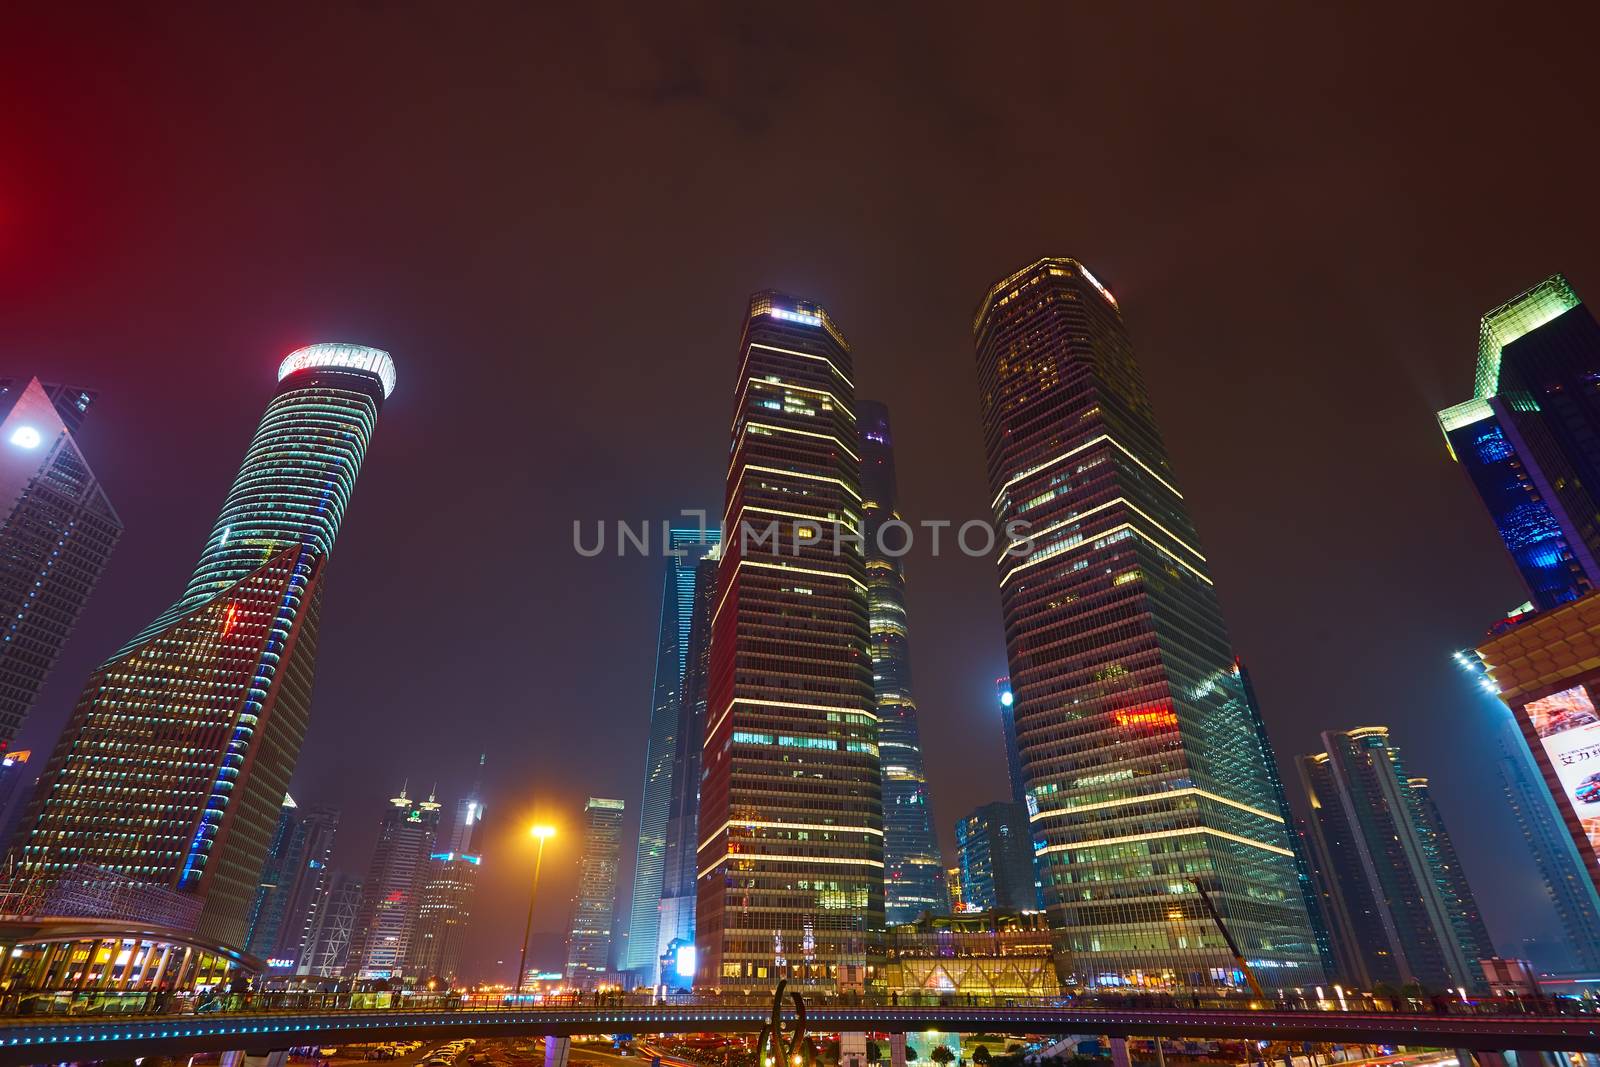 Shanghai at night by sarymsakov